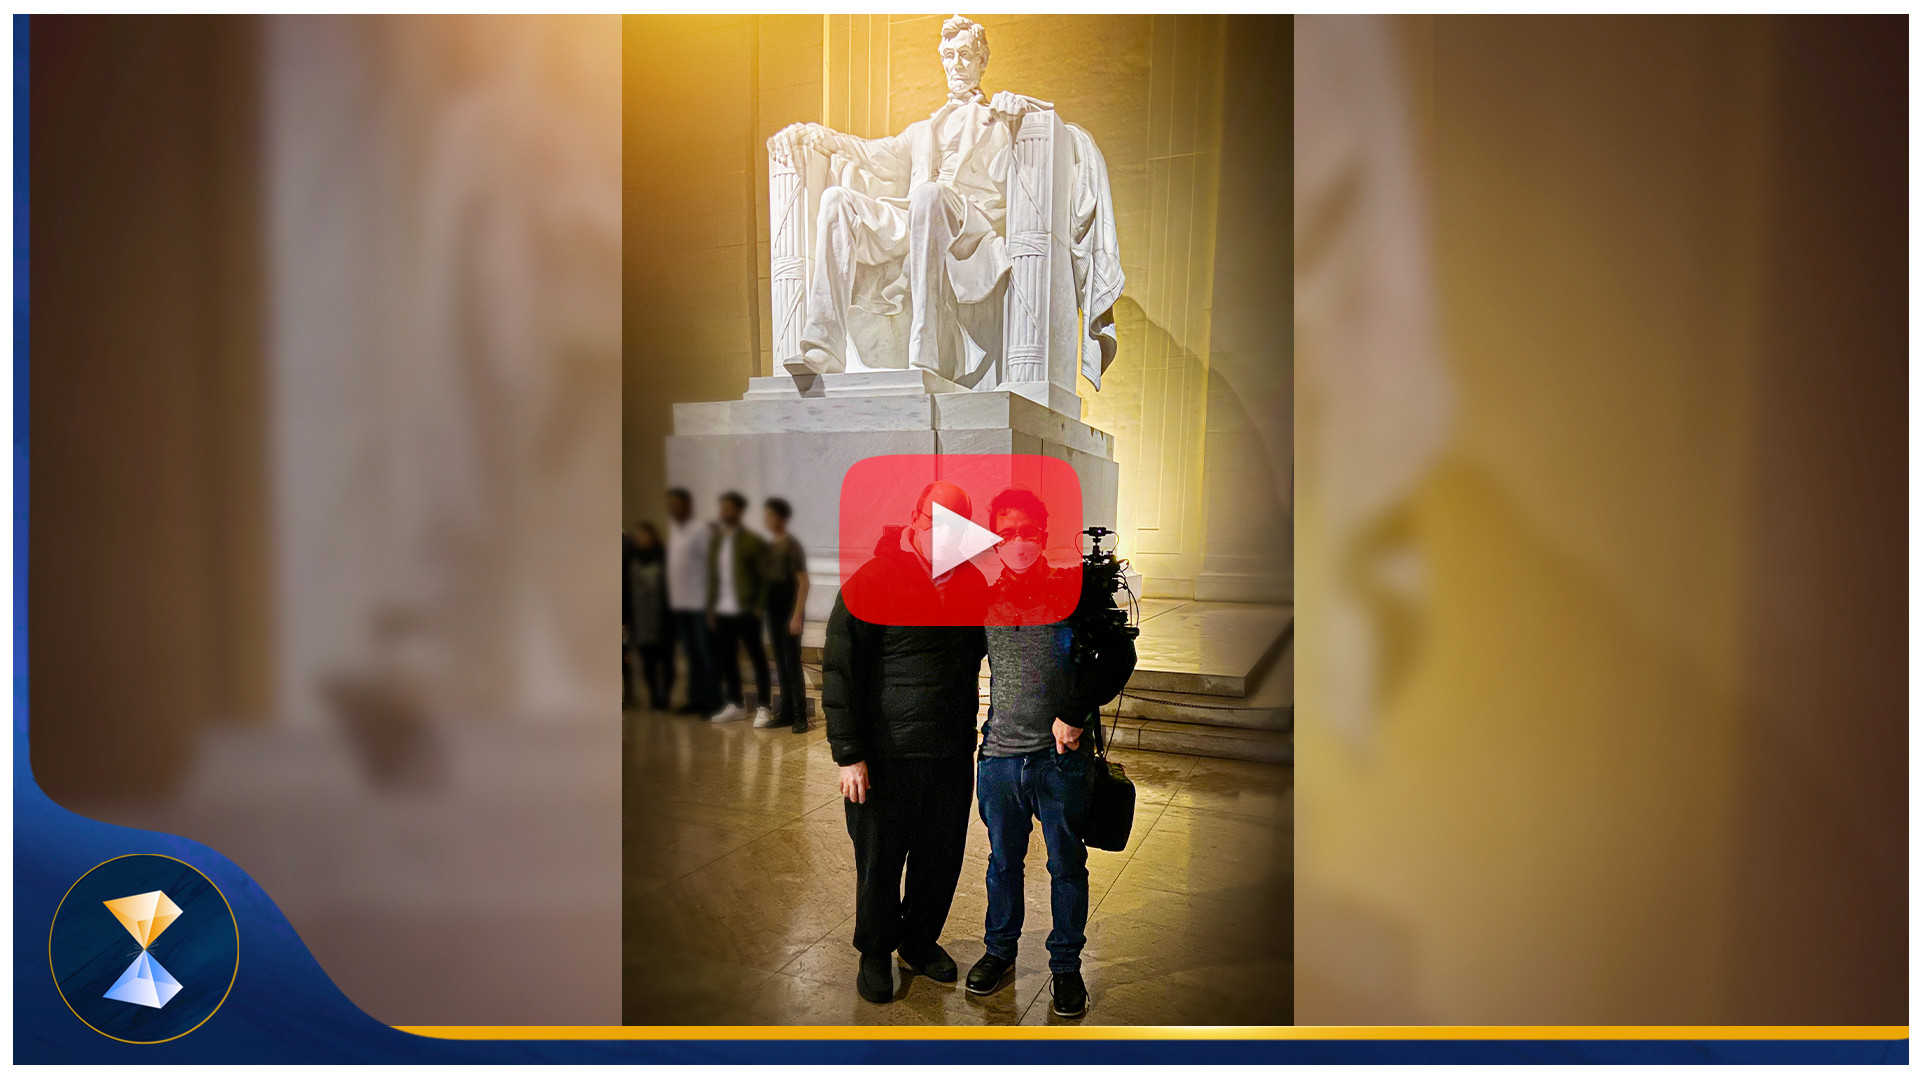 Discurso inspiradíssimo e vídeo brilhante, sobre o templo em homenagem a Abraham Lincoln